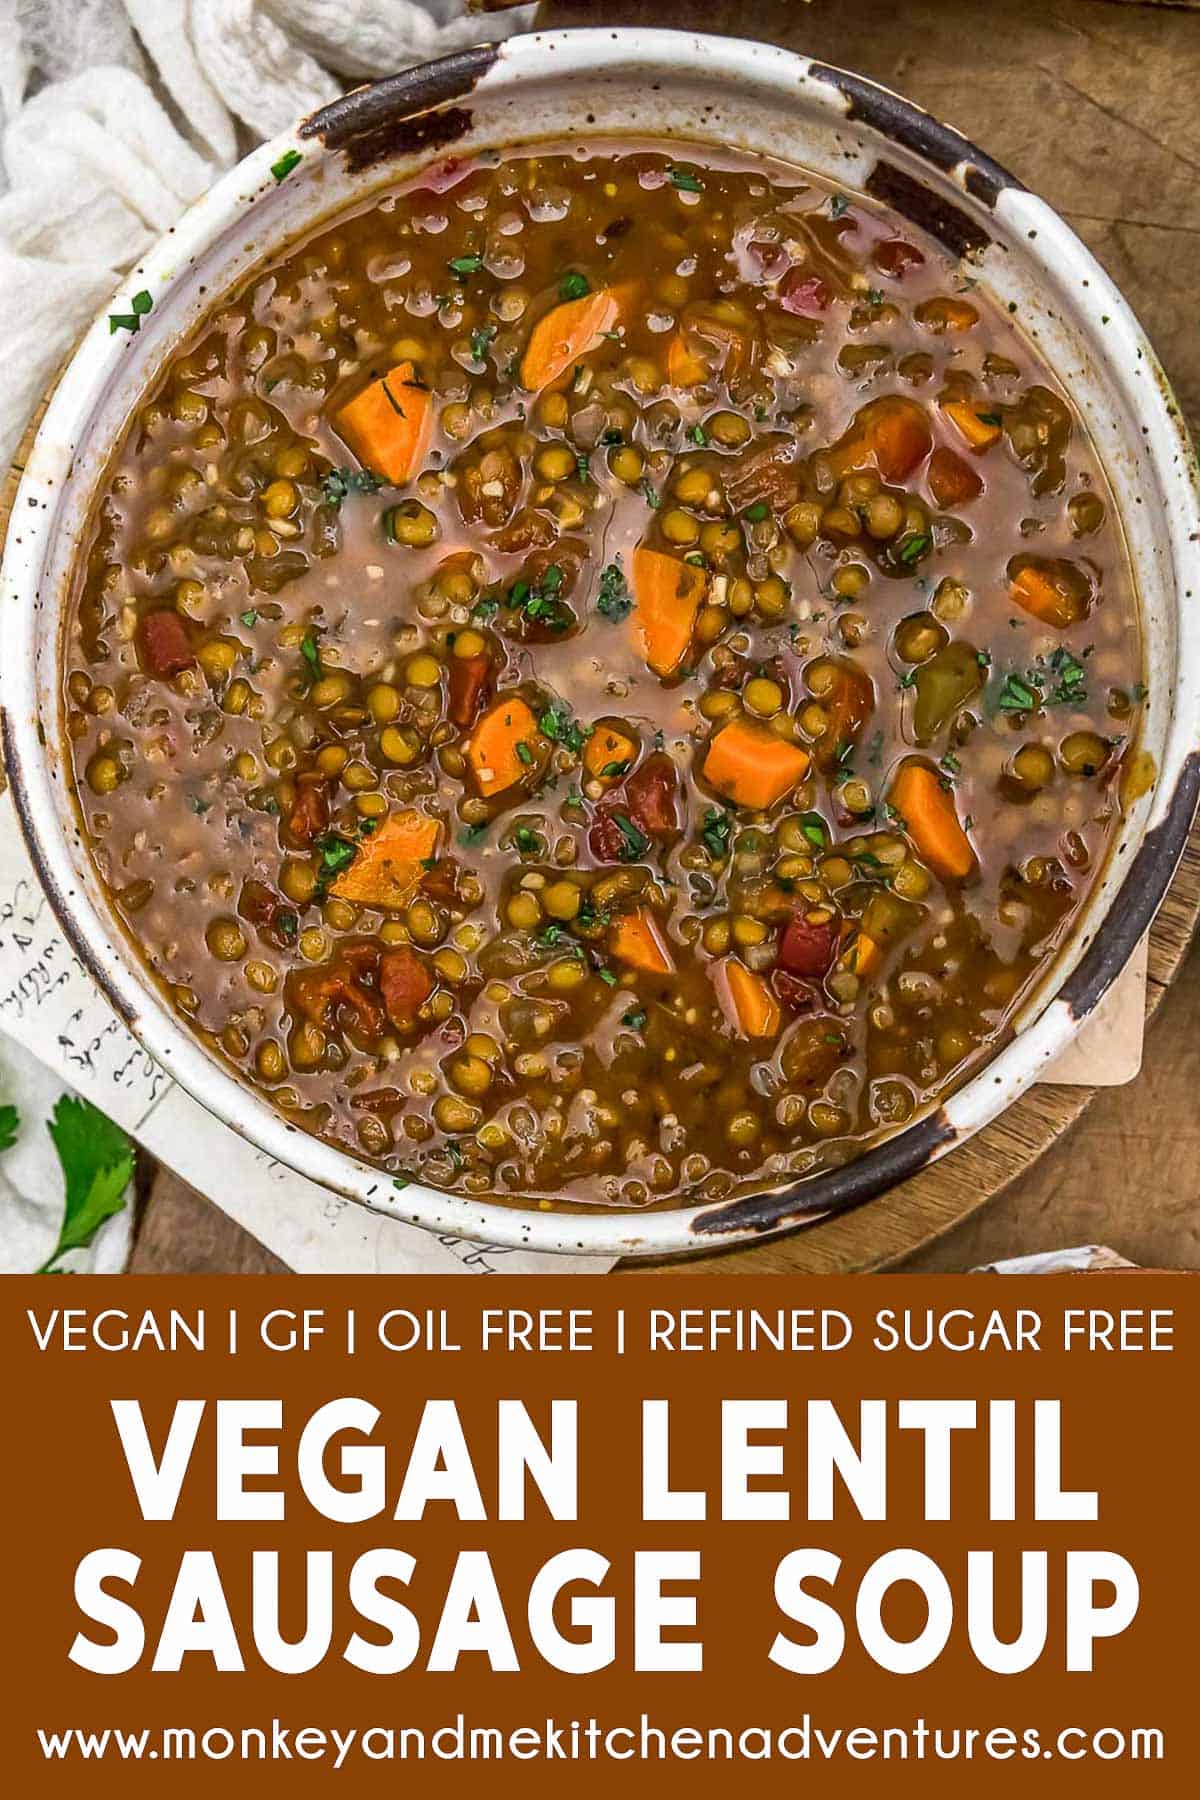 Vegan Lentil “Sausage” Soup with text description